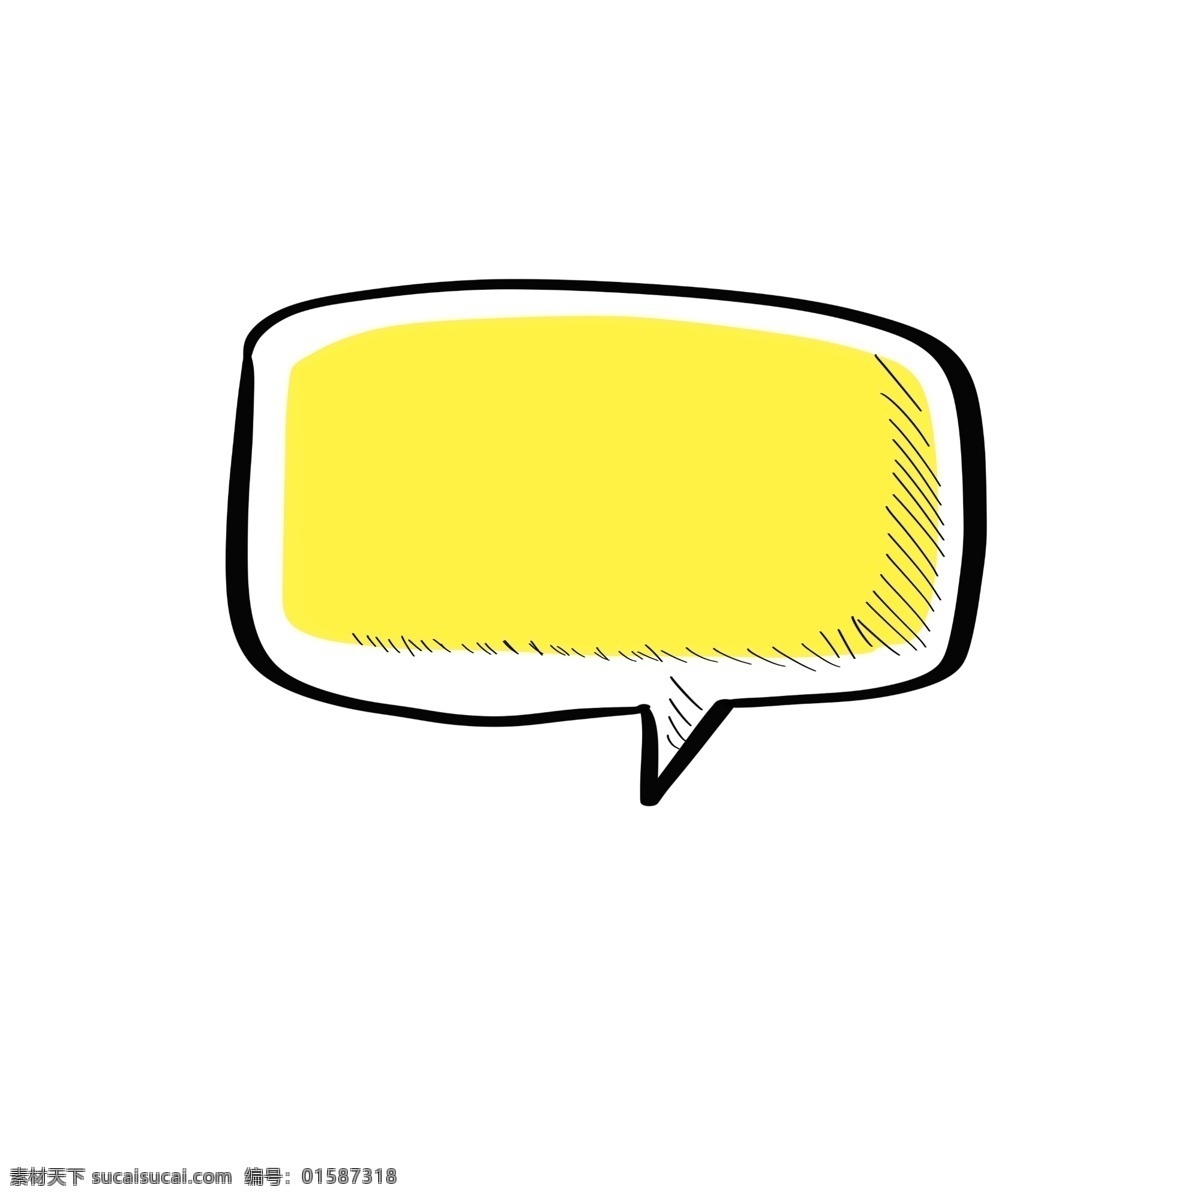 简单 对话框 手绘 可爱 黄色 对话款 简约 框 对话 卡通对话框 手绘图形 简单手绘 对话框图形